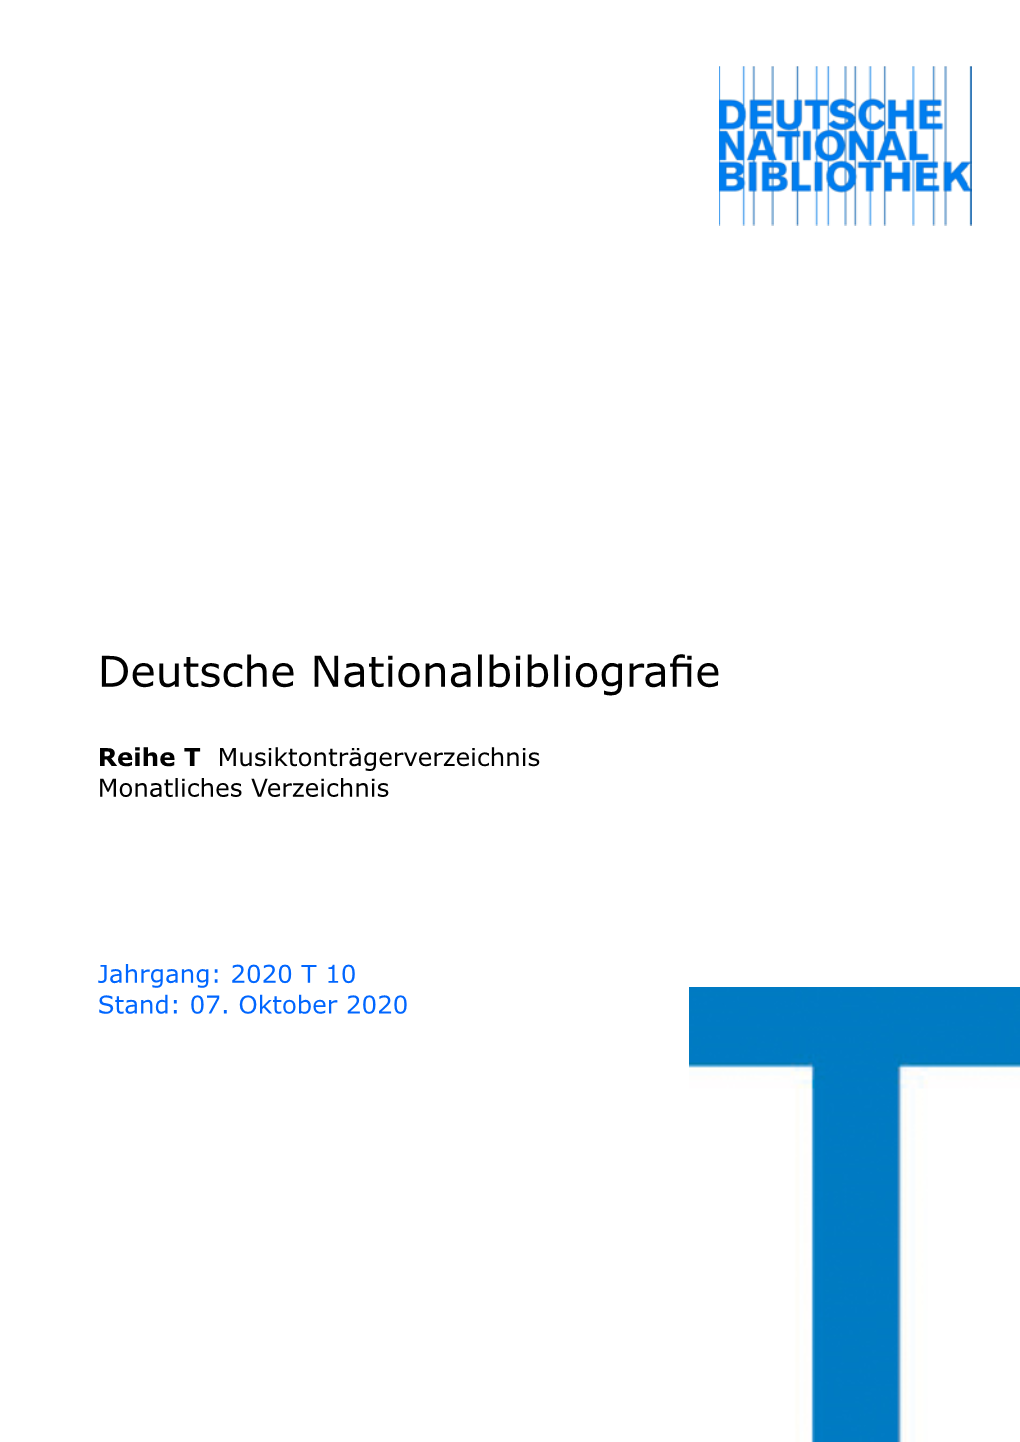 Deutsche Nationalbibliografie 2020 T 10